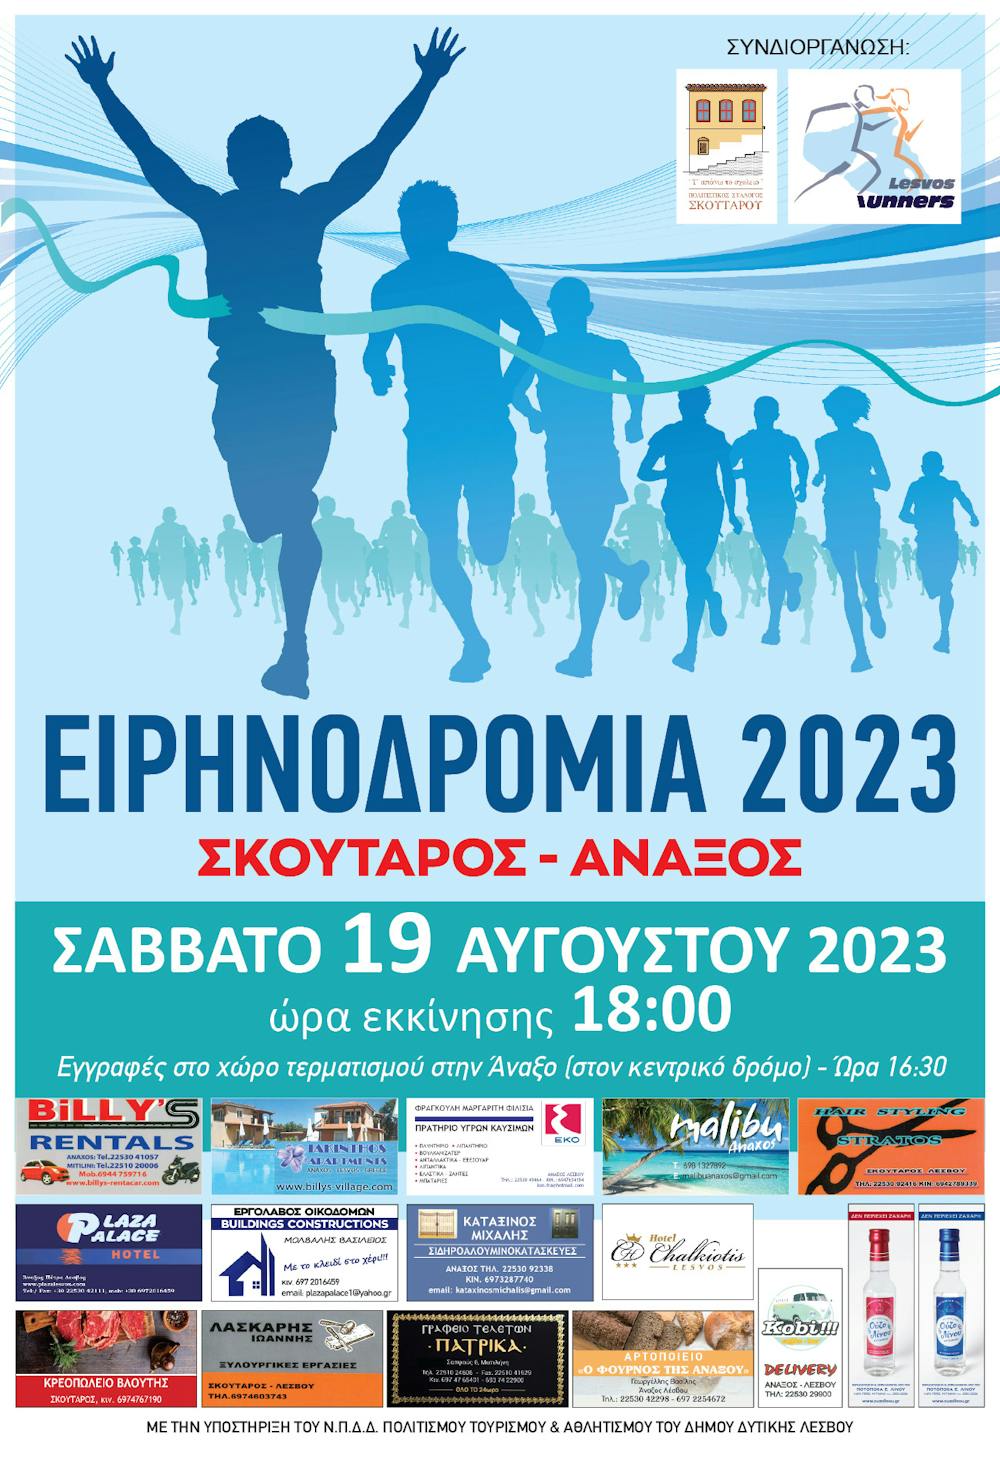 Ειρηνοδρομία 2023: Στις 19 Αυγούστου με δωρεάν συμμετοχή! runbeat.gr 